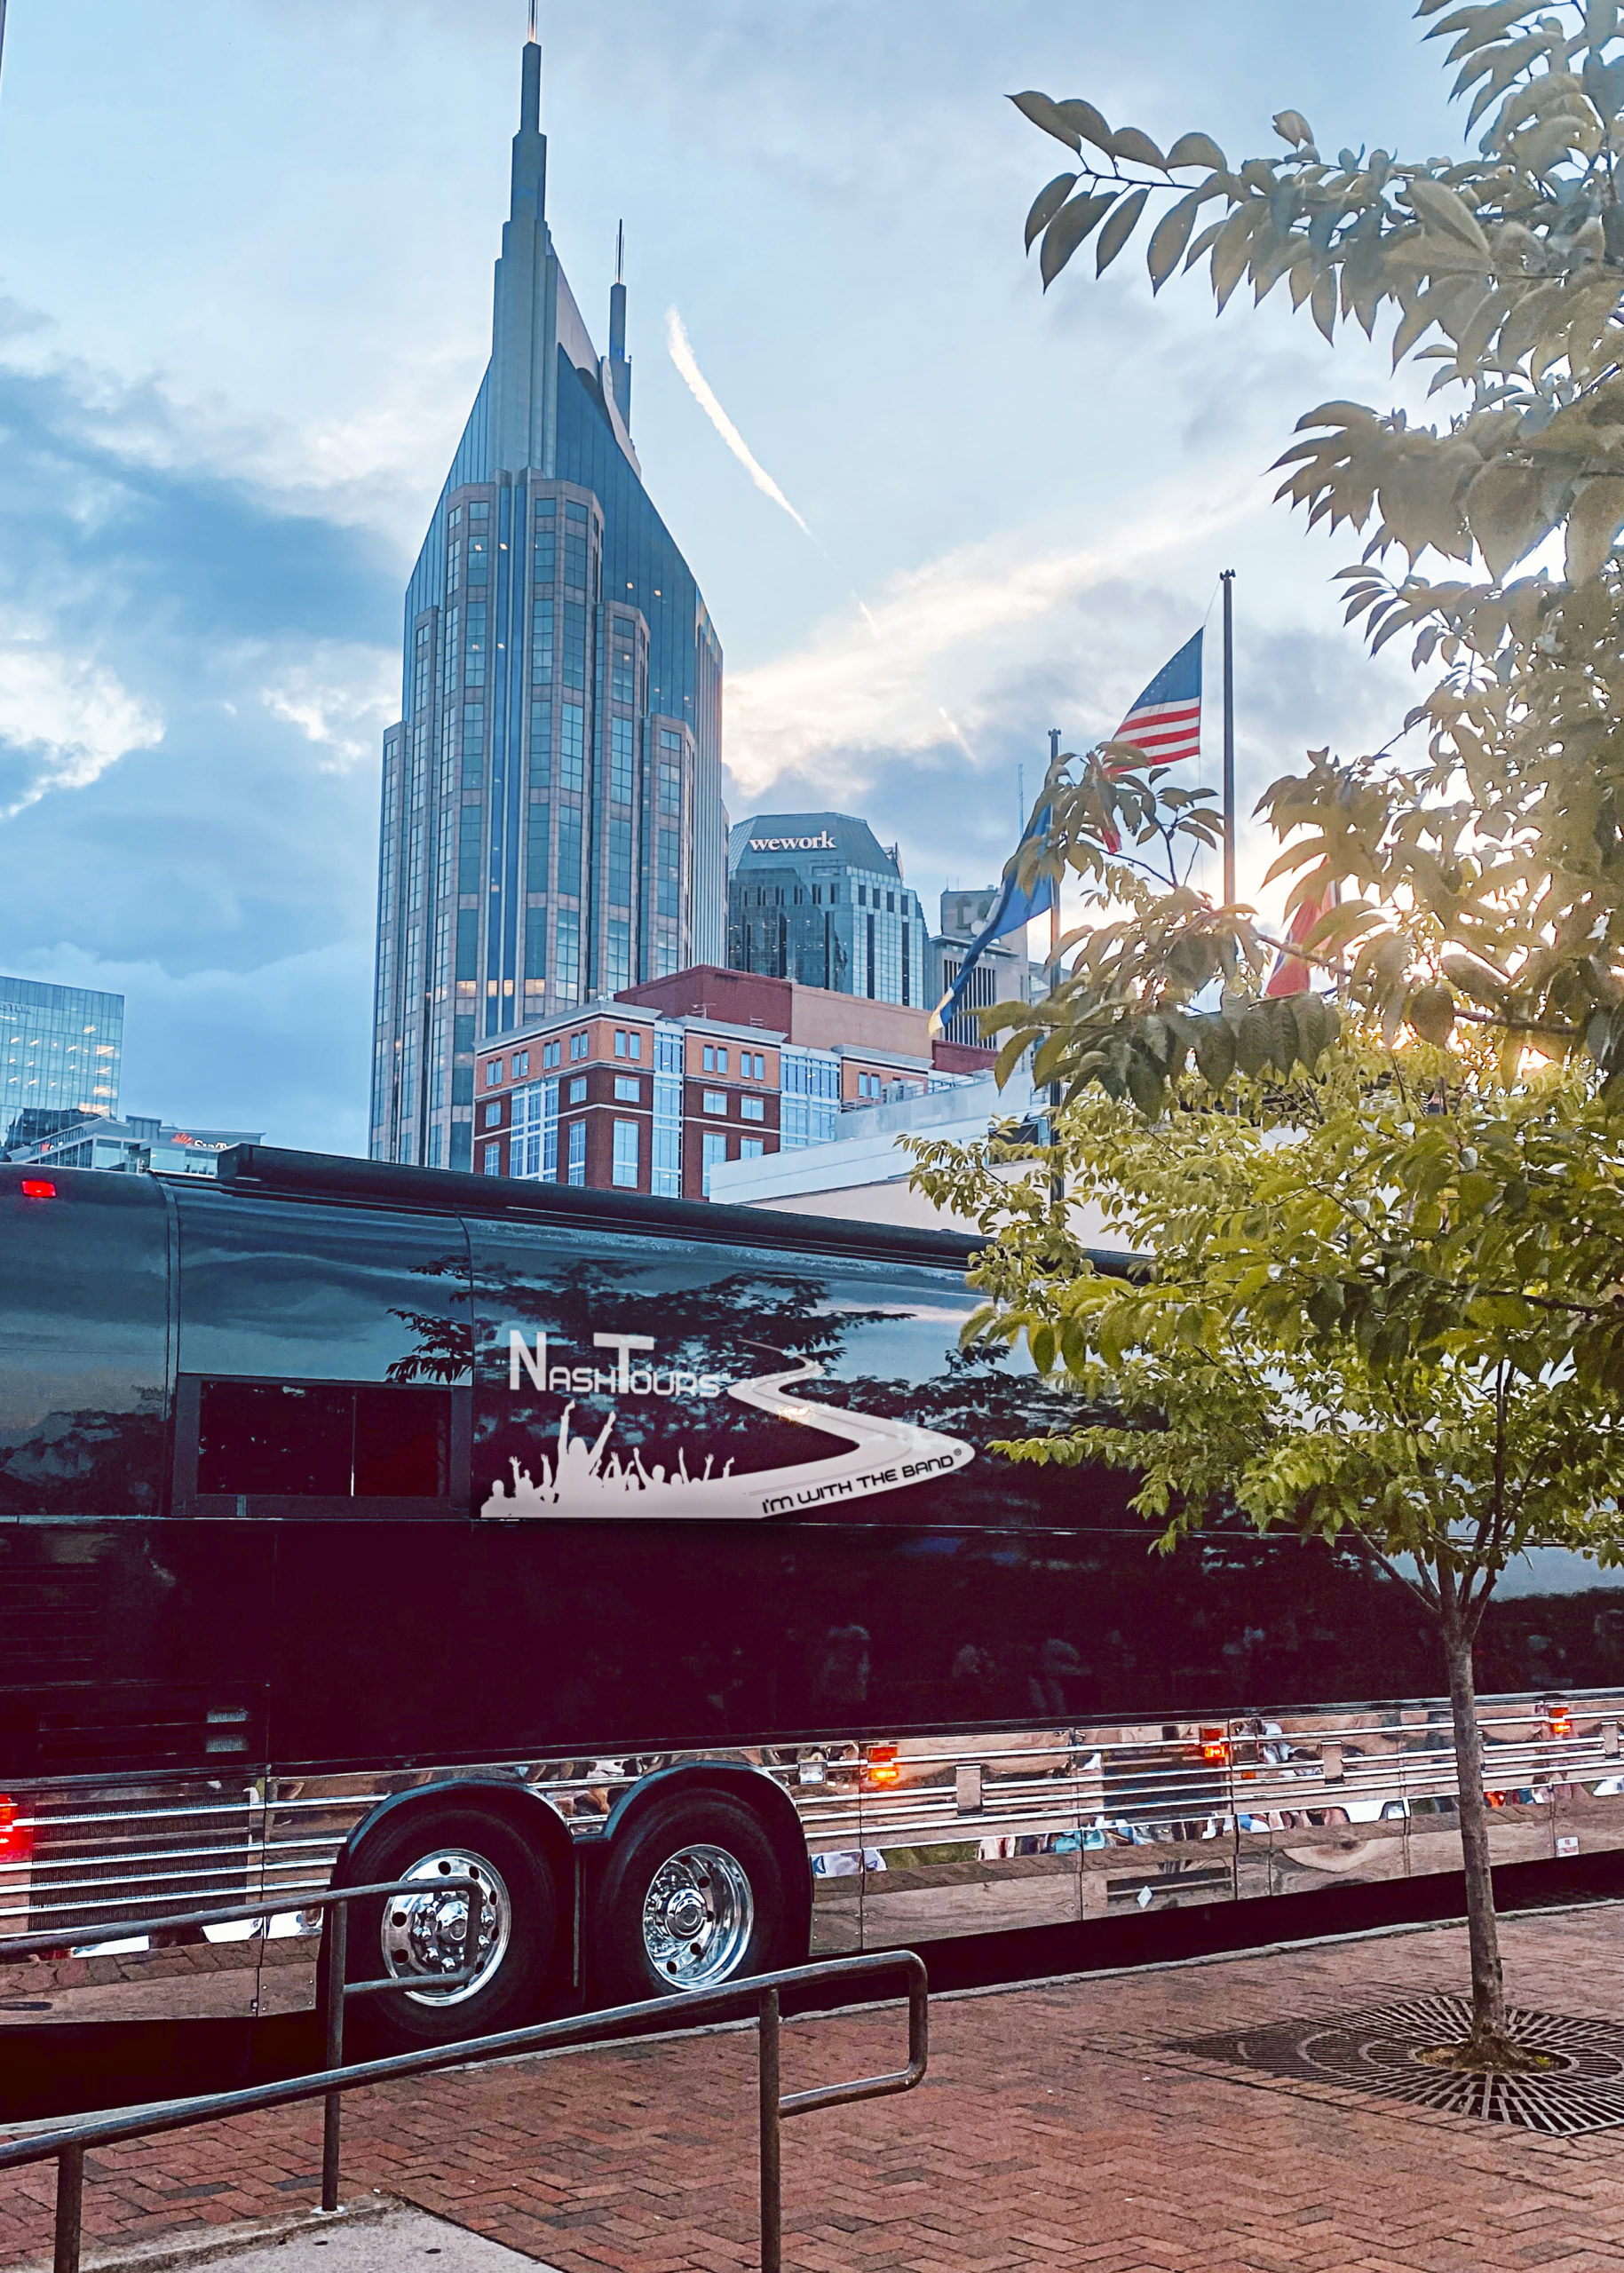 Nashville Party Bus